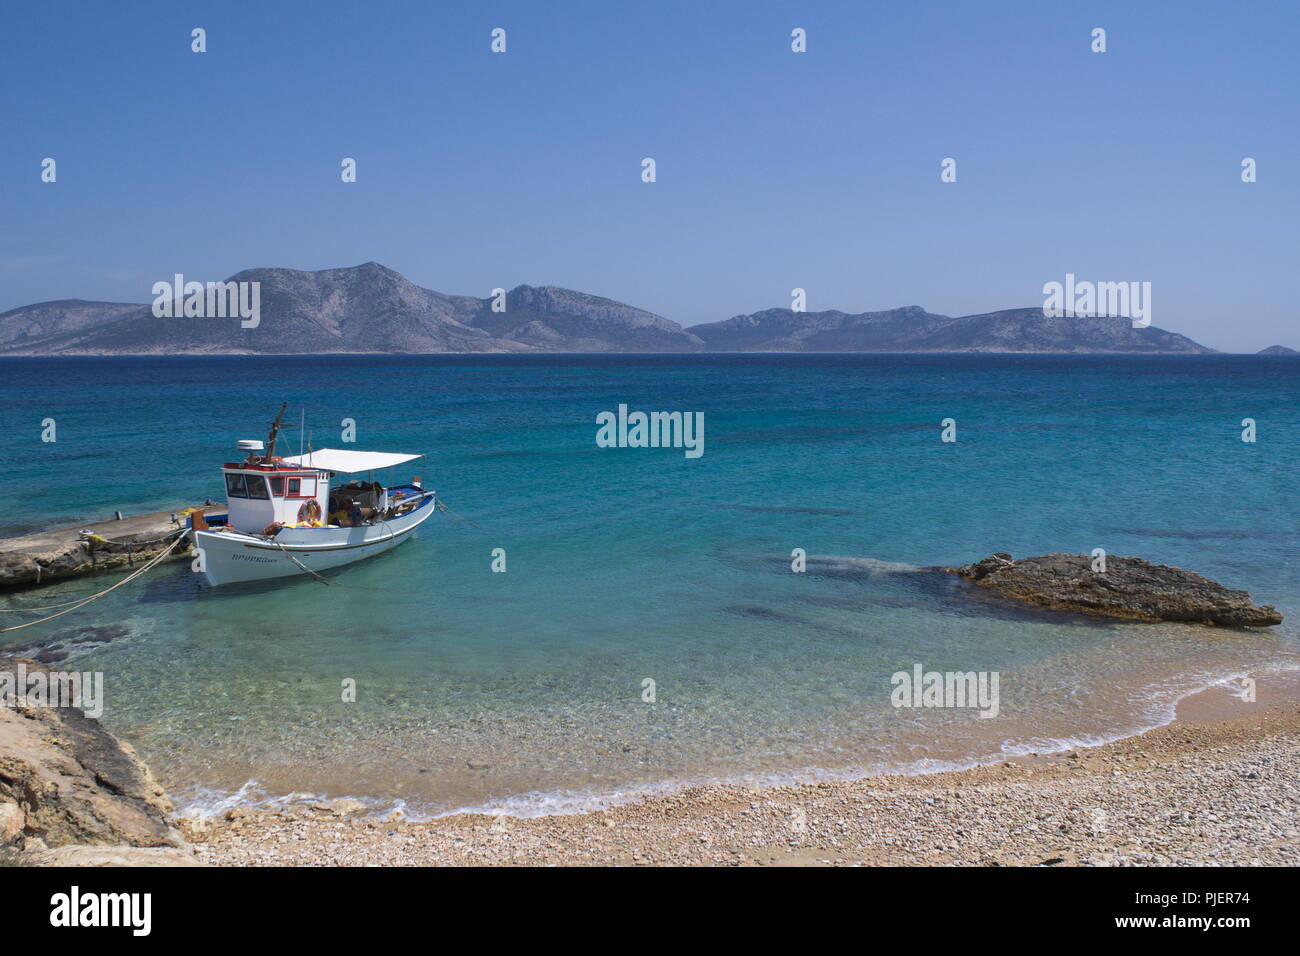 Grèce, la belle île de Koufonissi. Un petit bateau de pêche est amarré à une petite jetée sur une plage. Au loin se trouve l'île de Keros. Banque D'Images